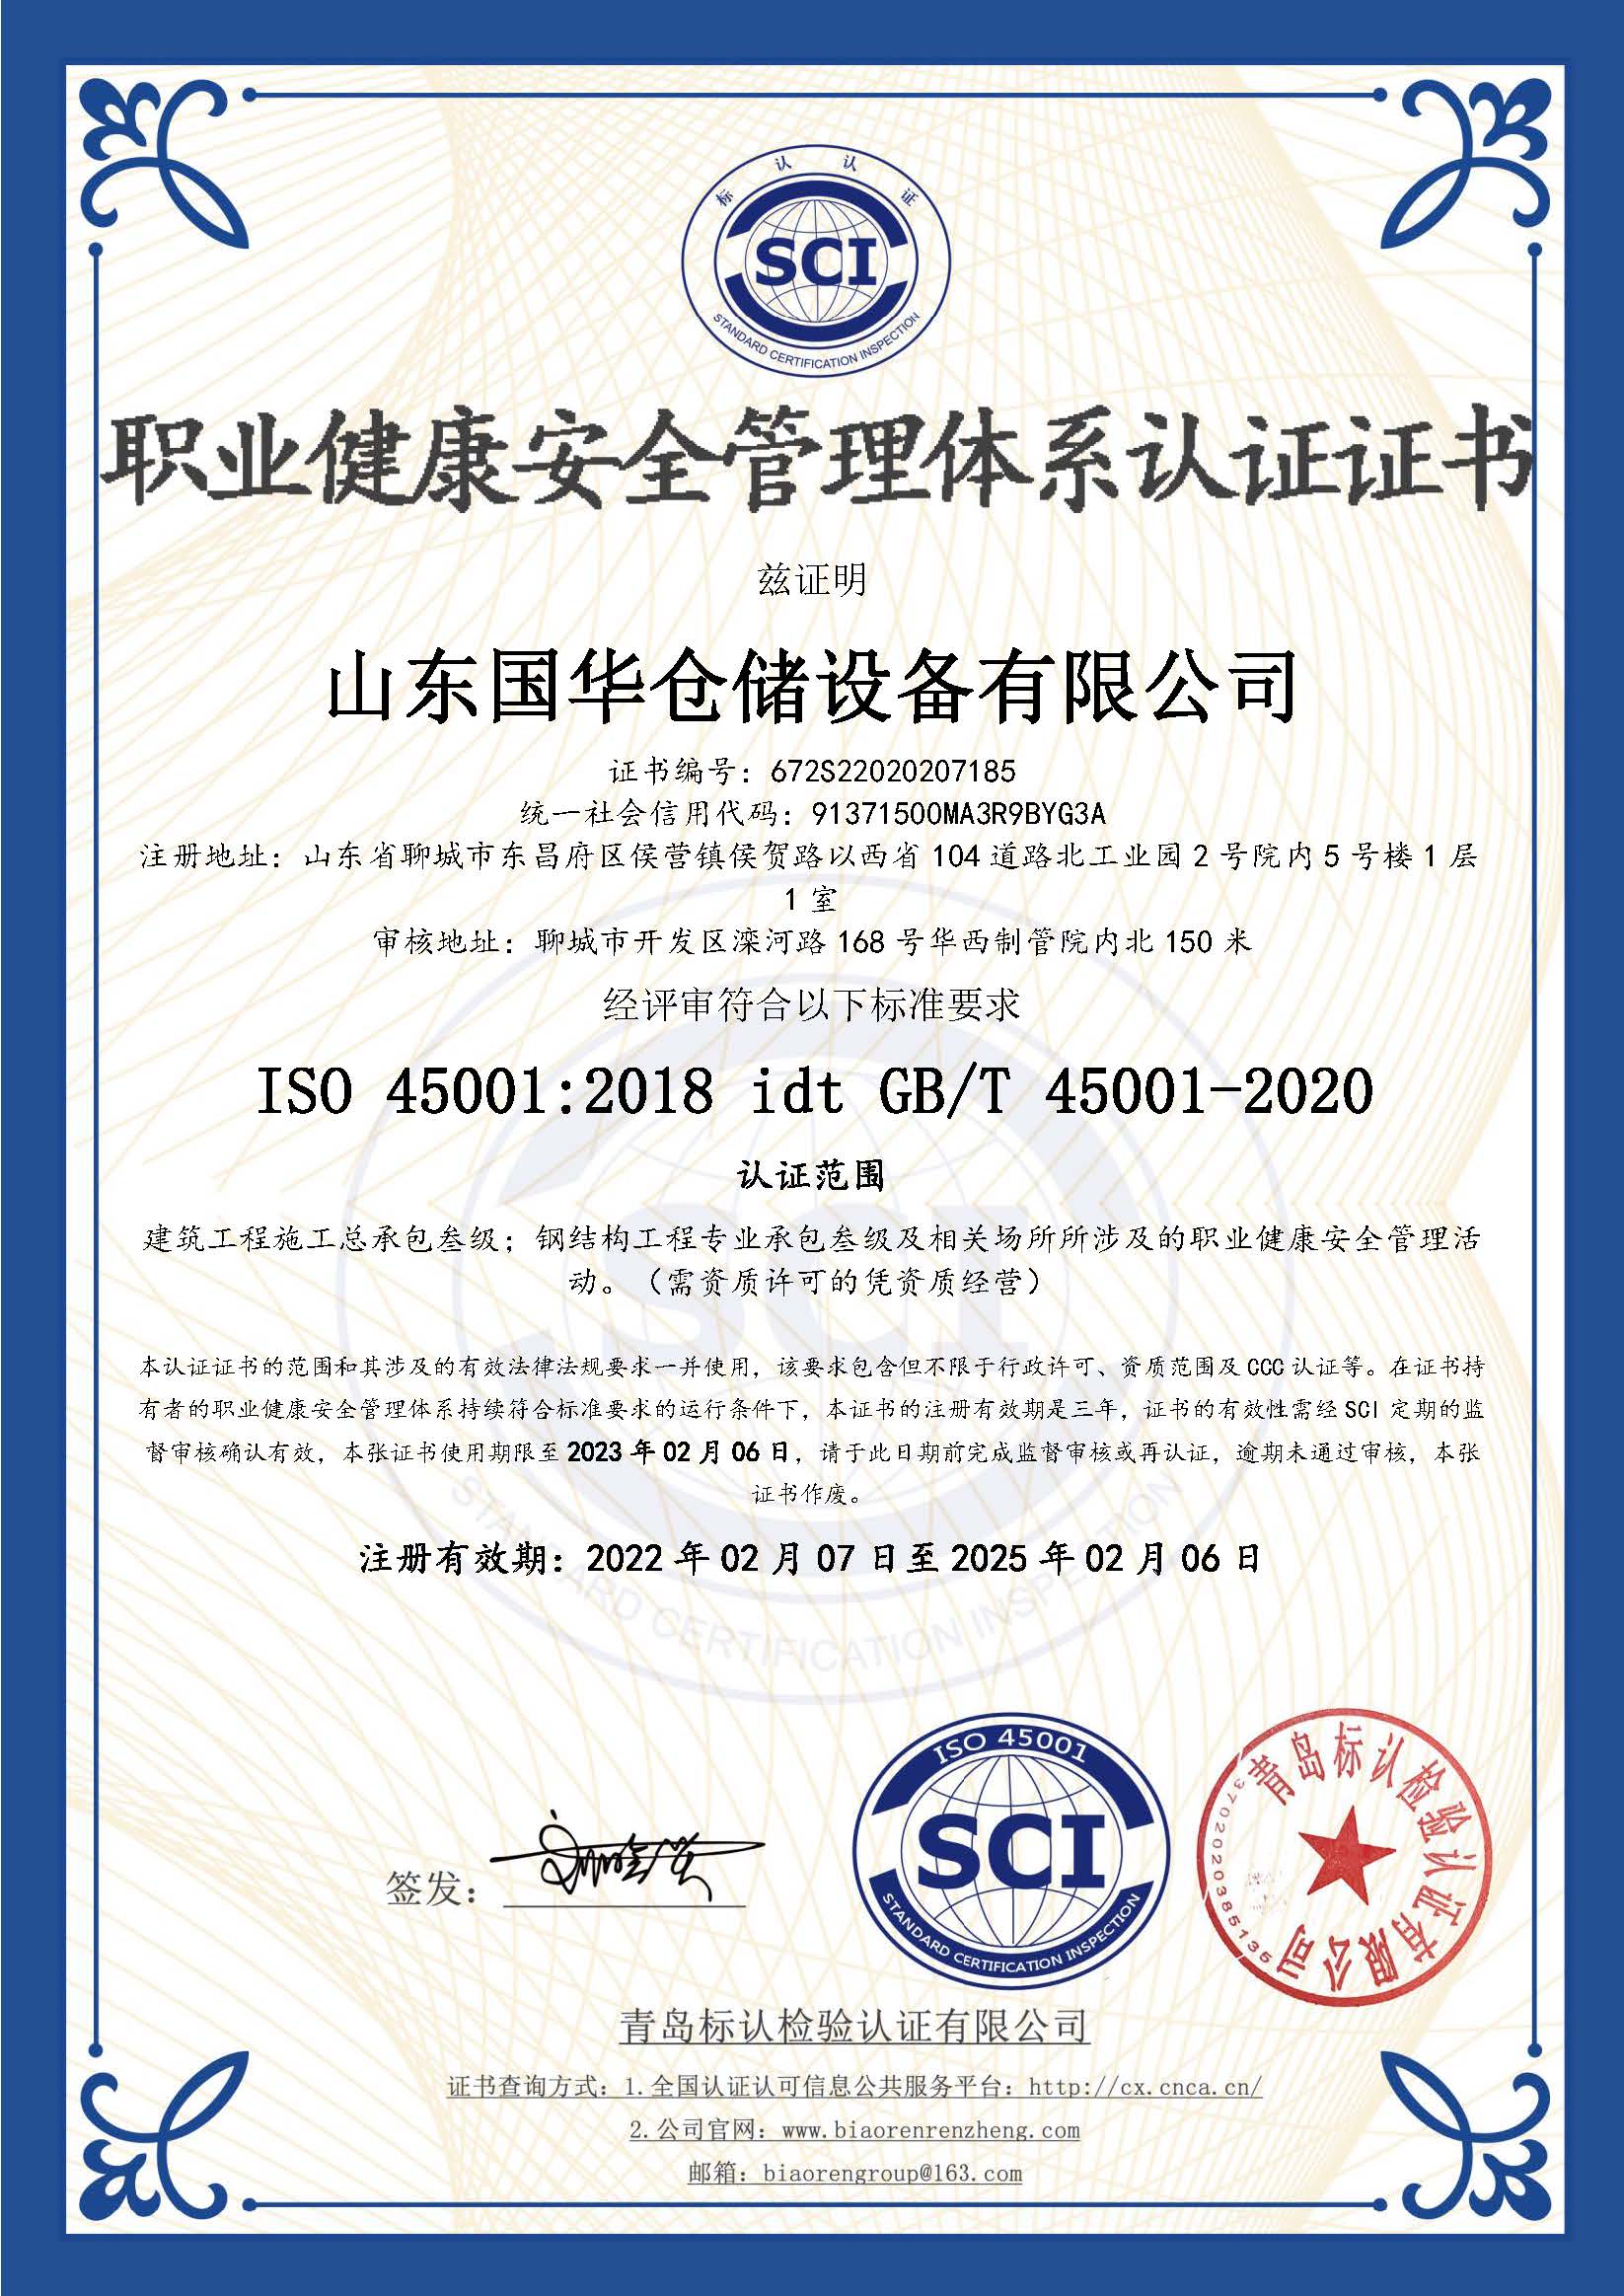 昭通钢板仓职业健康安全管理体系认证证书